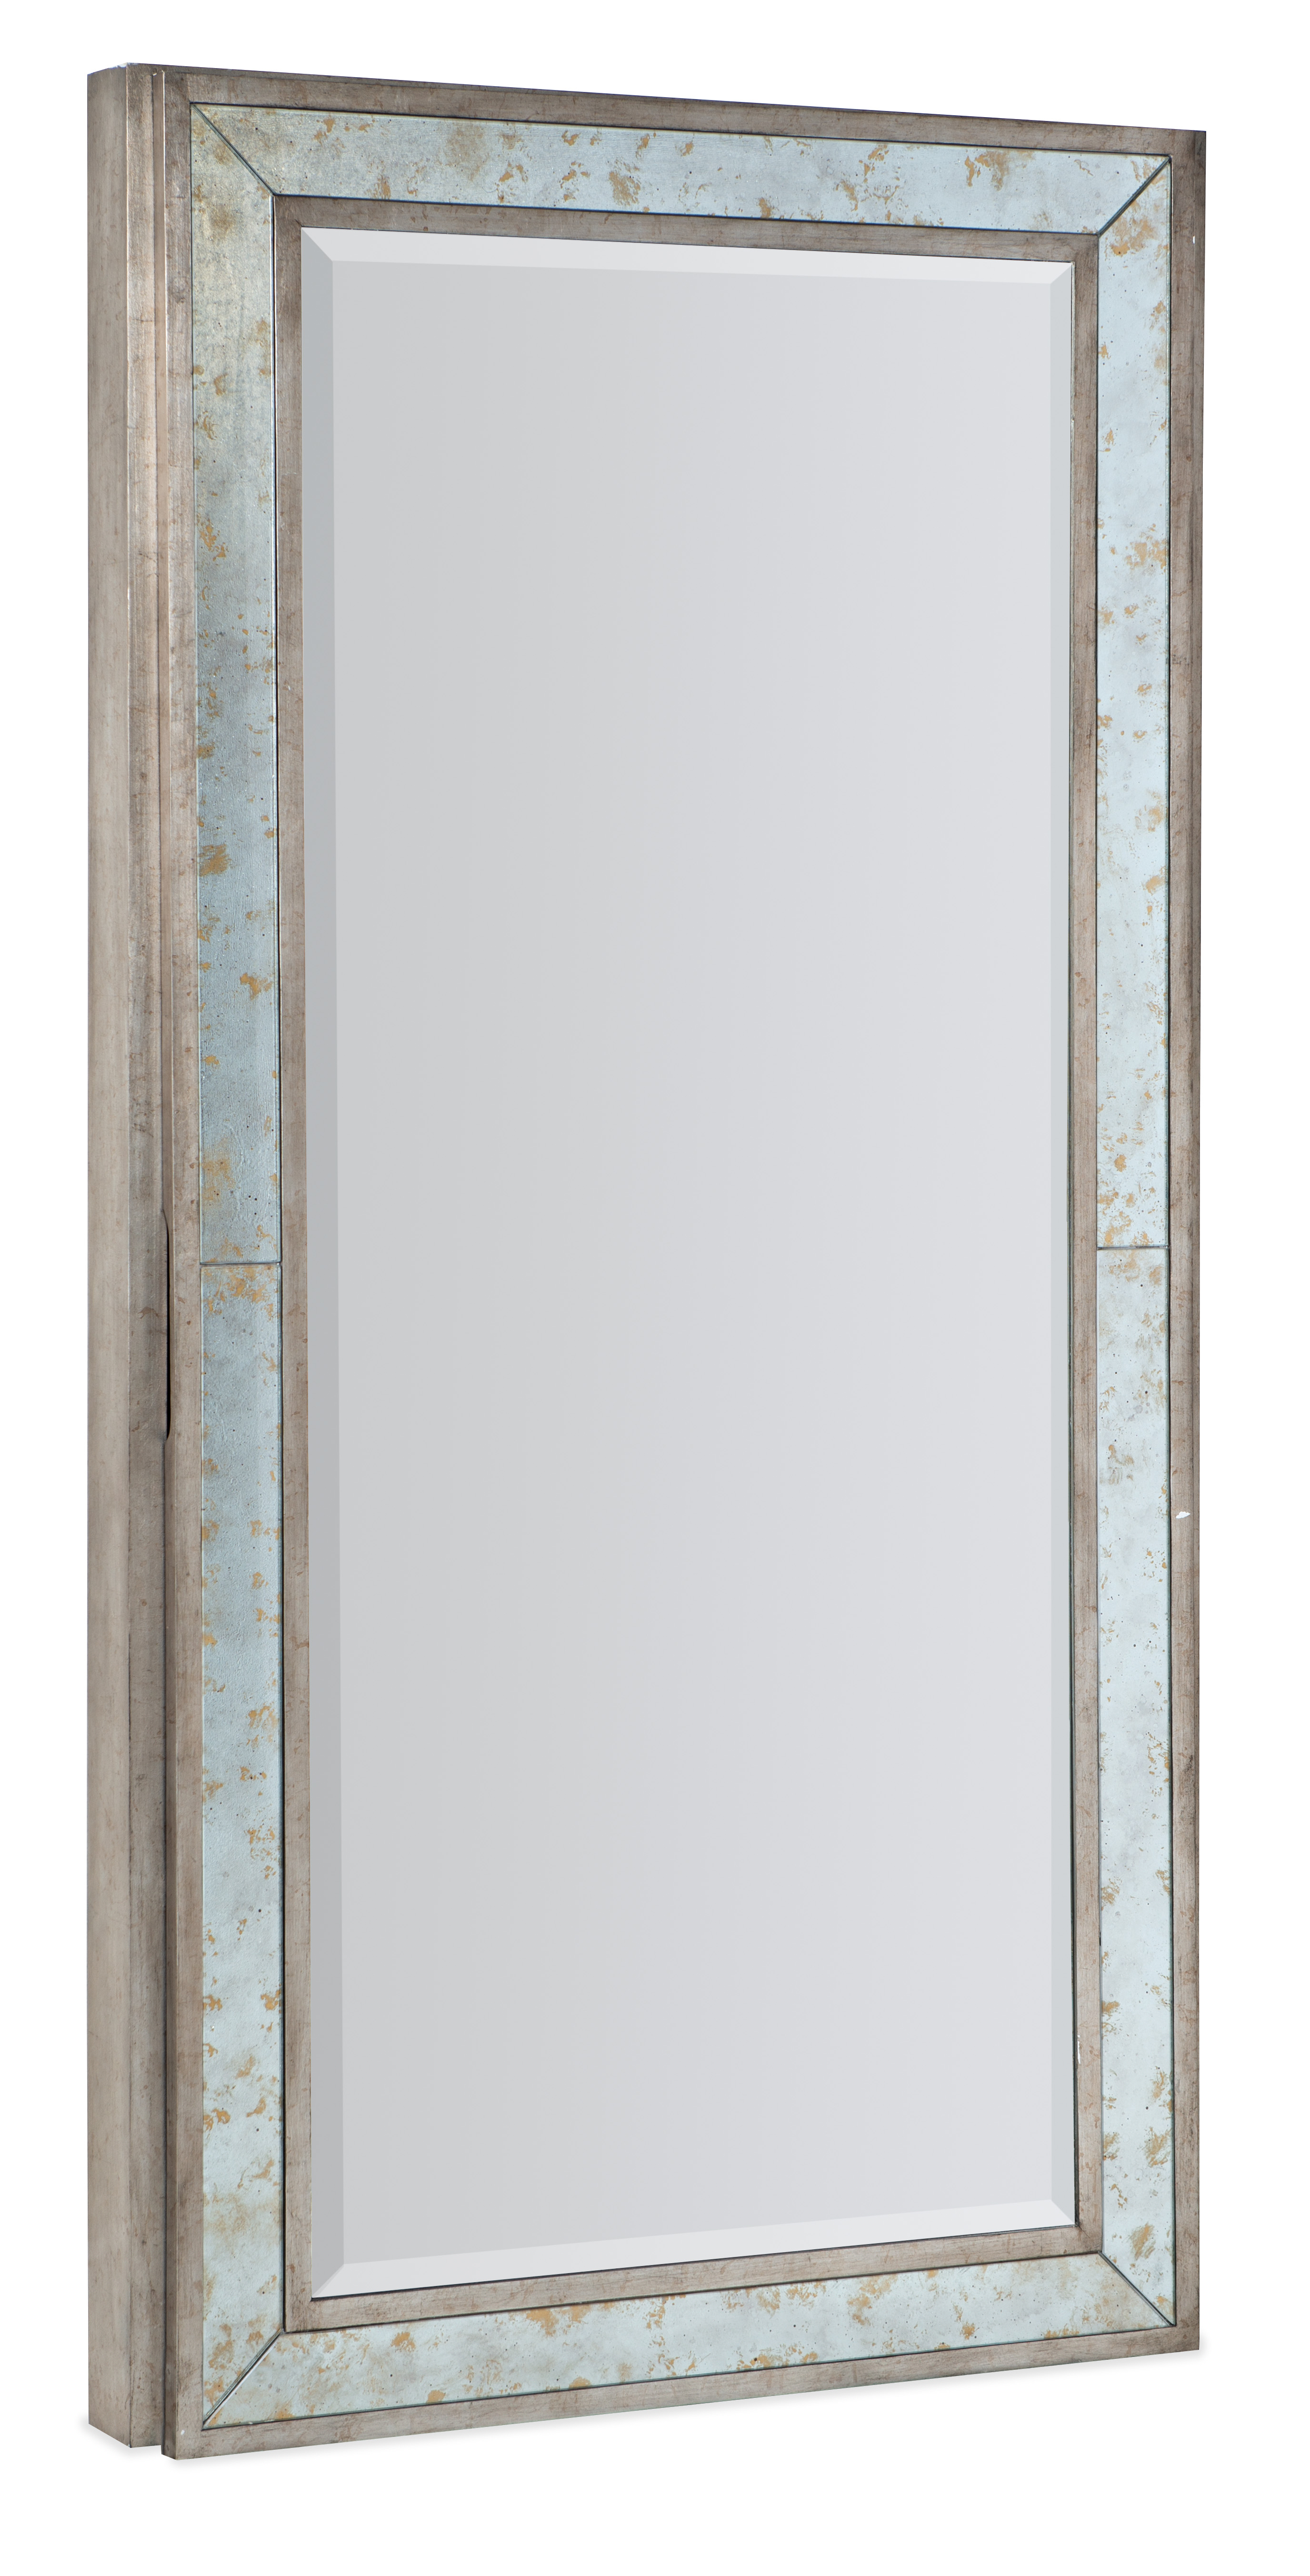 Picture of McAllister Floor Mirror w/ Storage